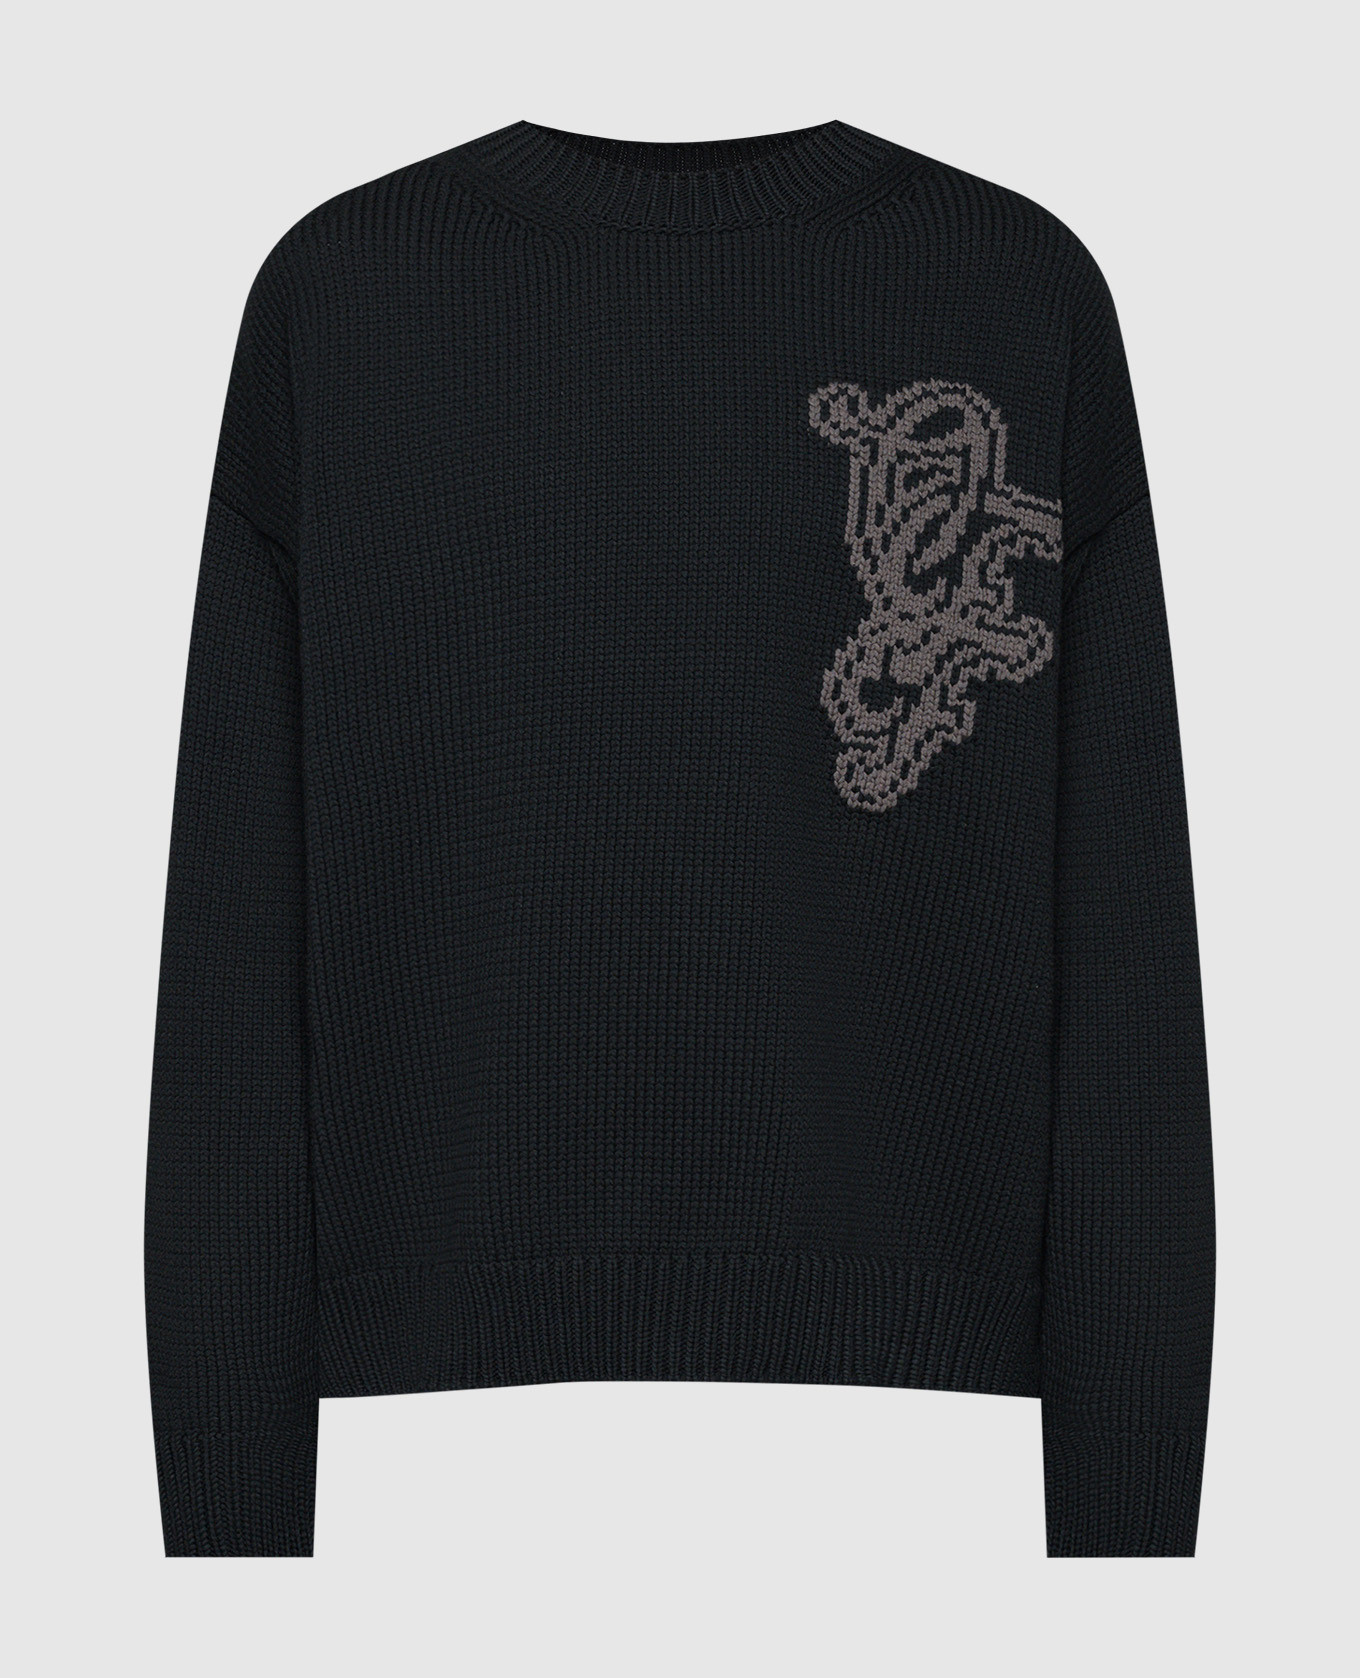 Черный свитер Natlover с логотипом узором.